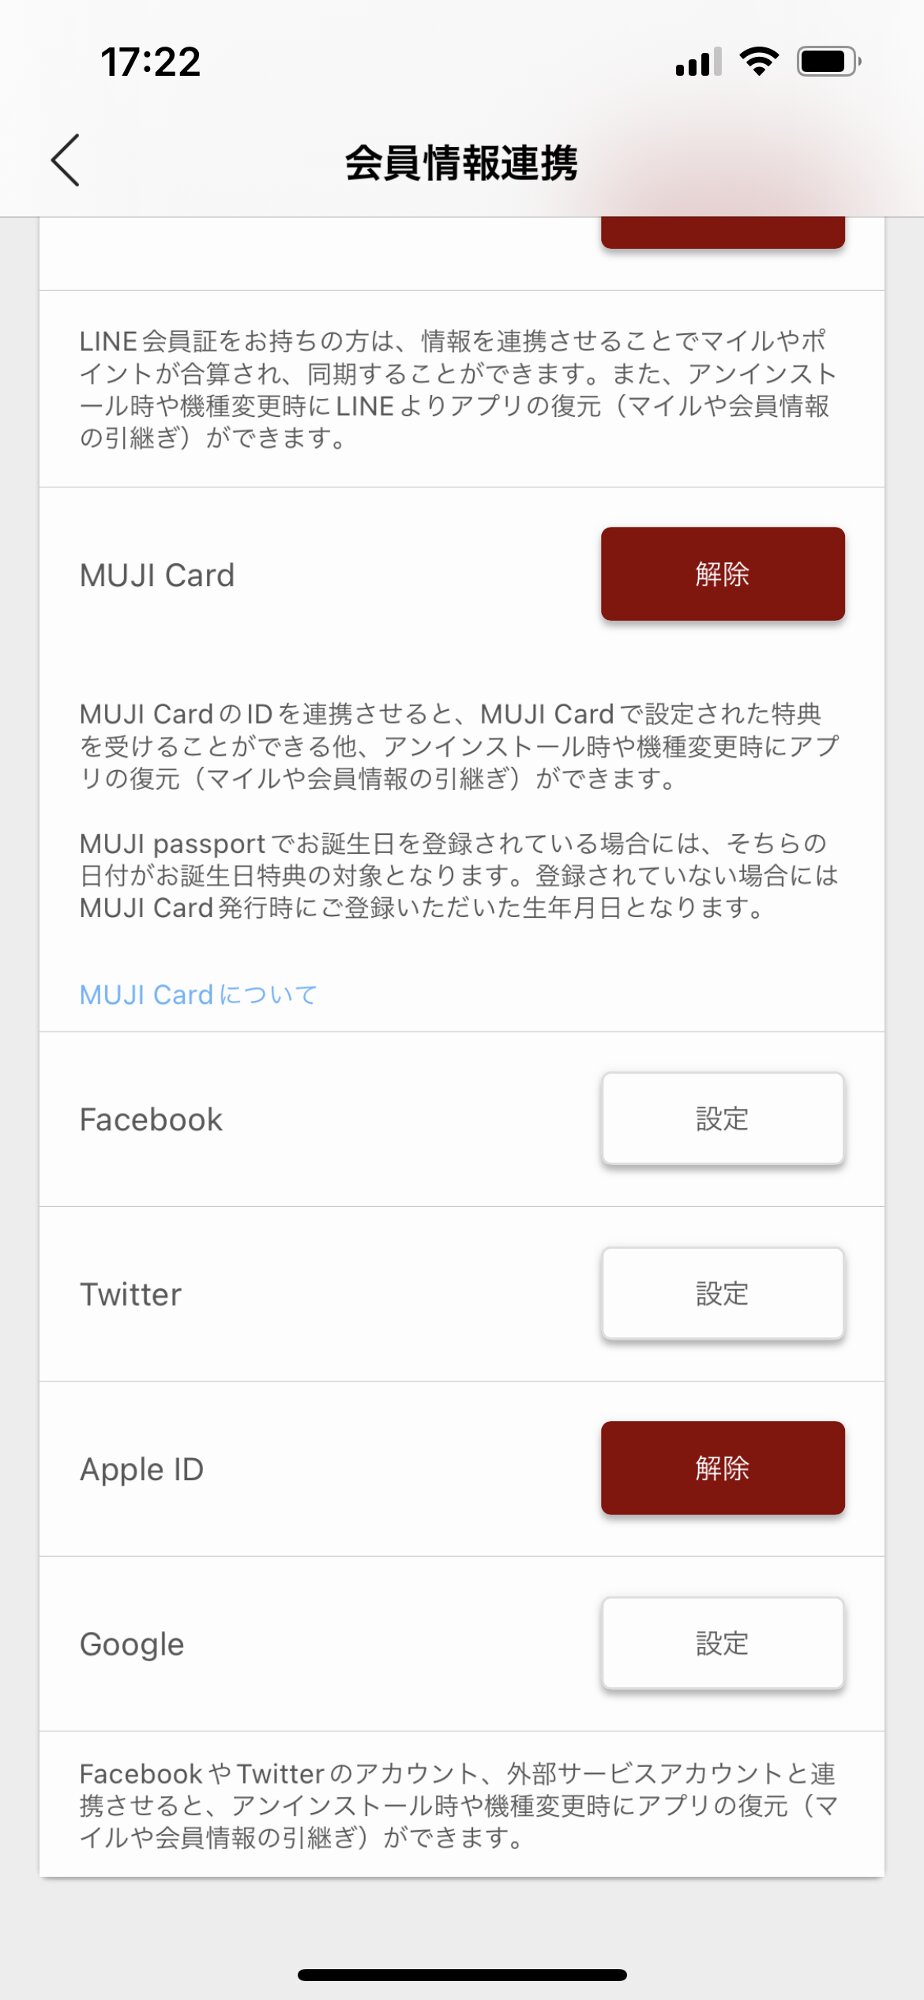 アプリ画面 (MUJI passport)